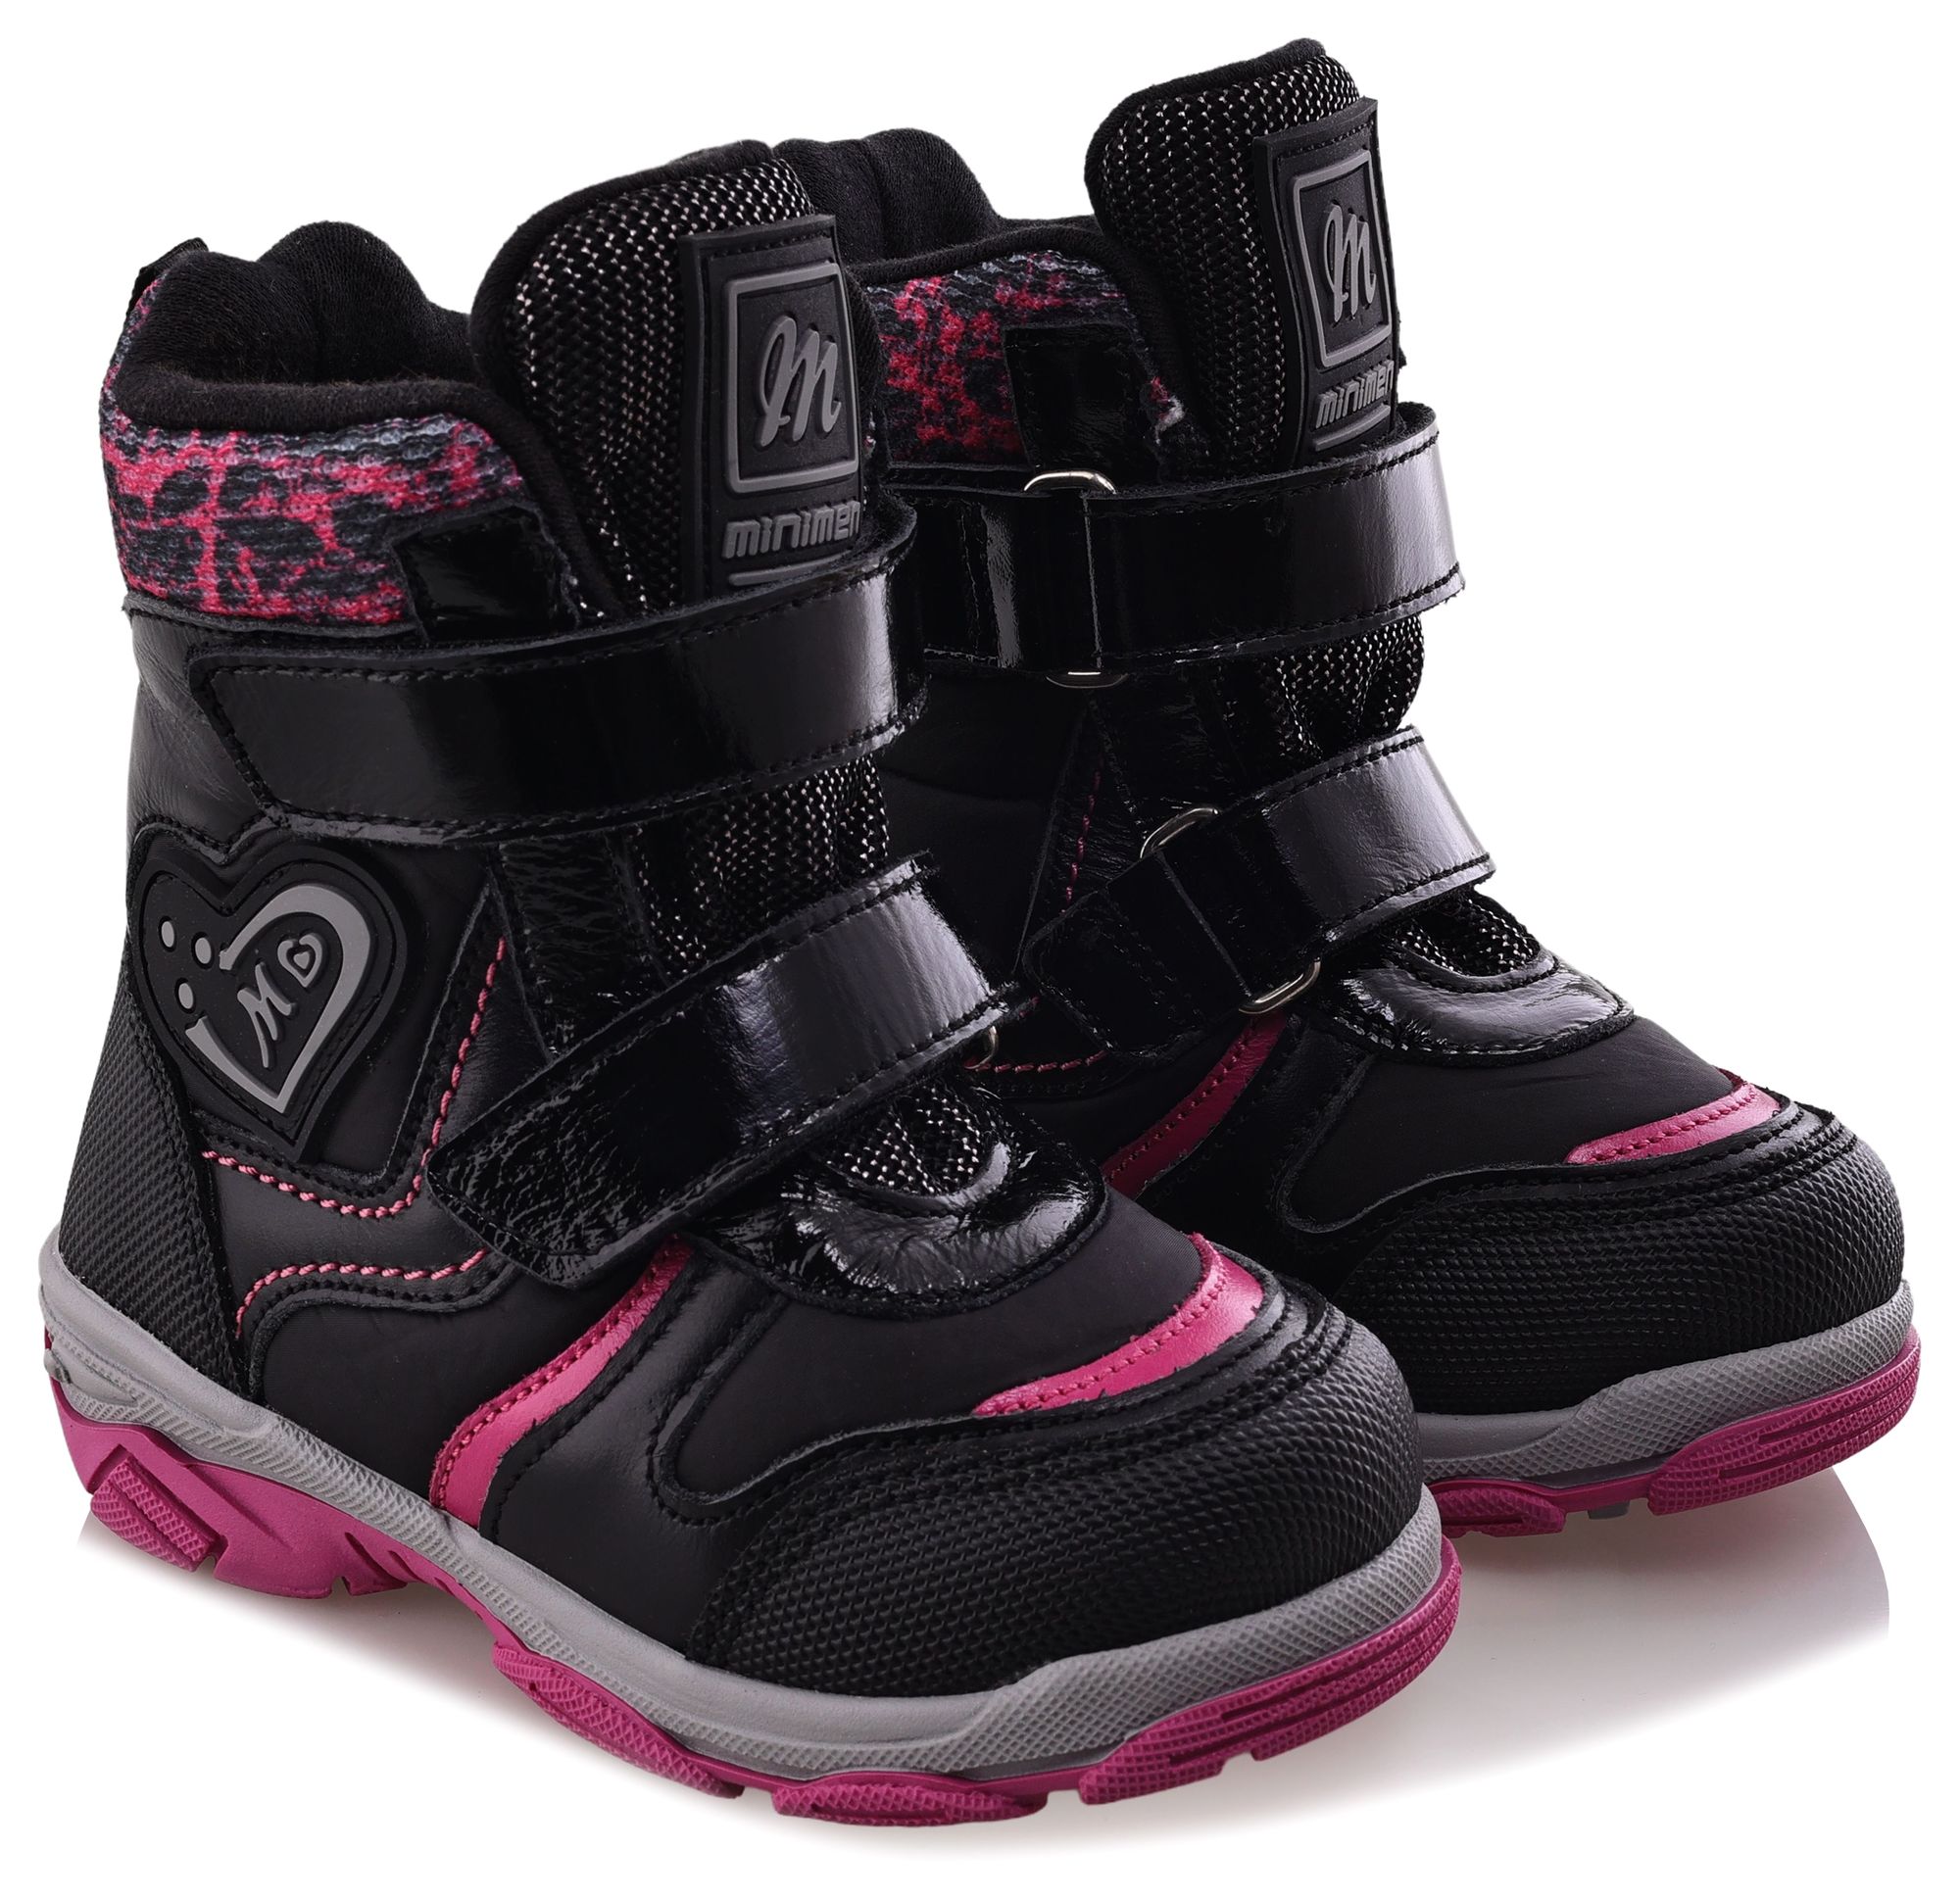 Ботинки Minimen для девочек, чёрные, размер 26, 2656-53-23B-01 ботинки minimen для девочек розовые размер 28 2656 53 23b 02